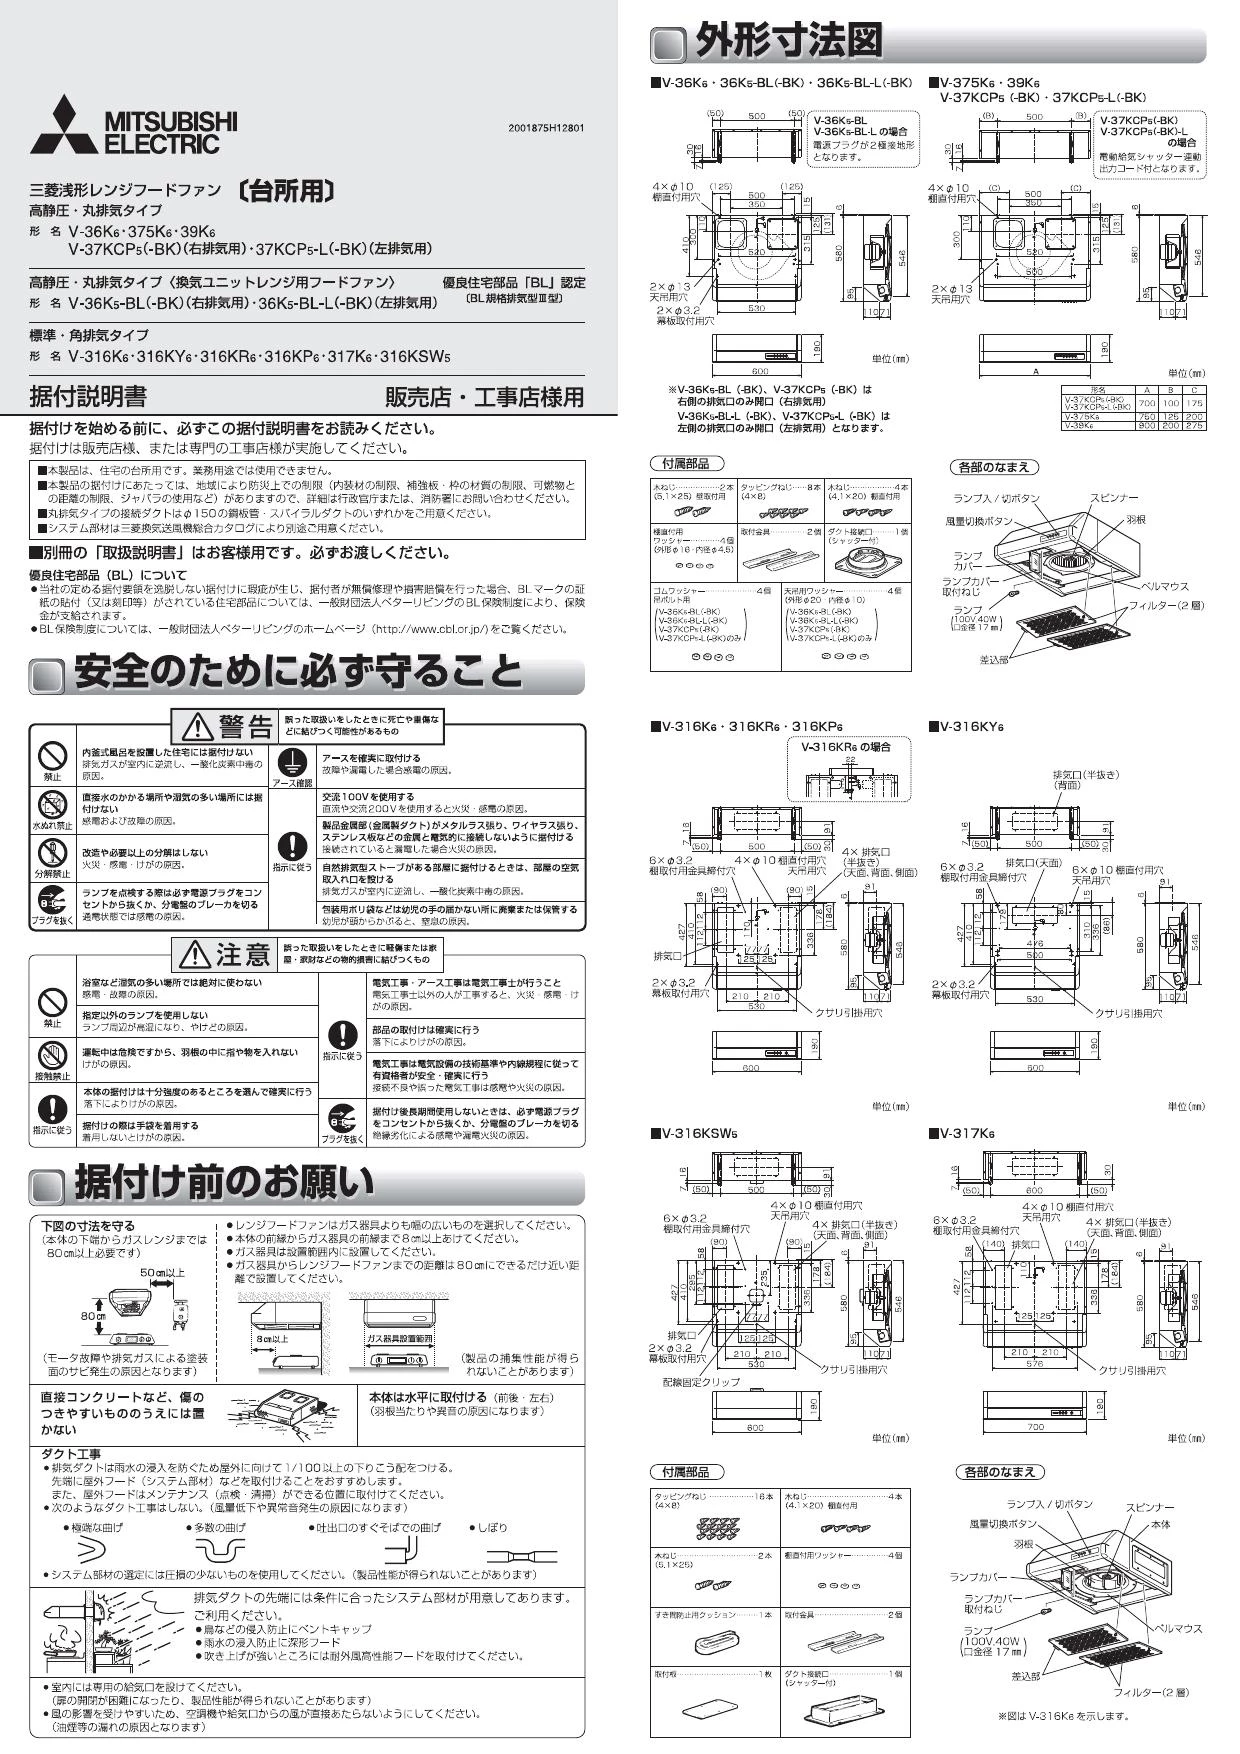 三菱電機 V-316KY6 取扱説明書 商品図面 施工説明書|三菱電機 浅形 